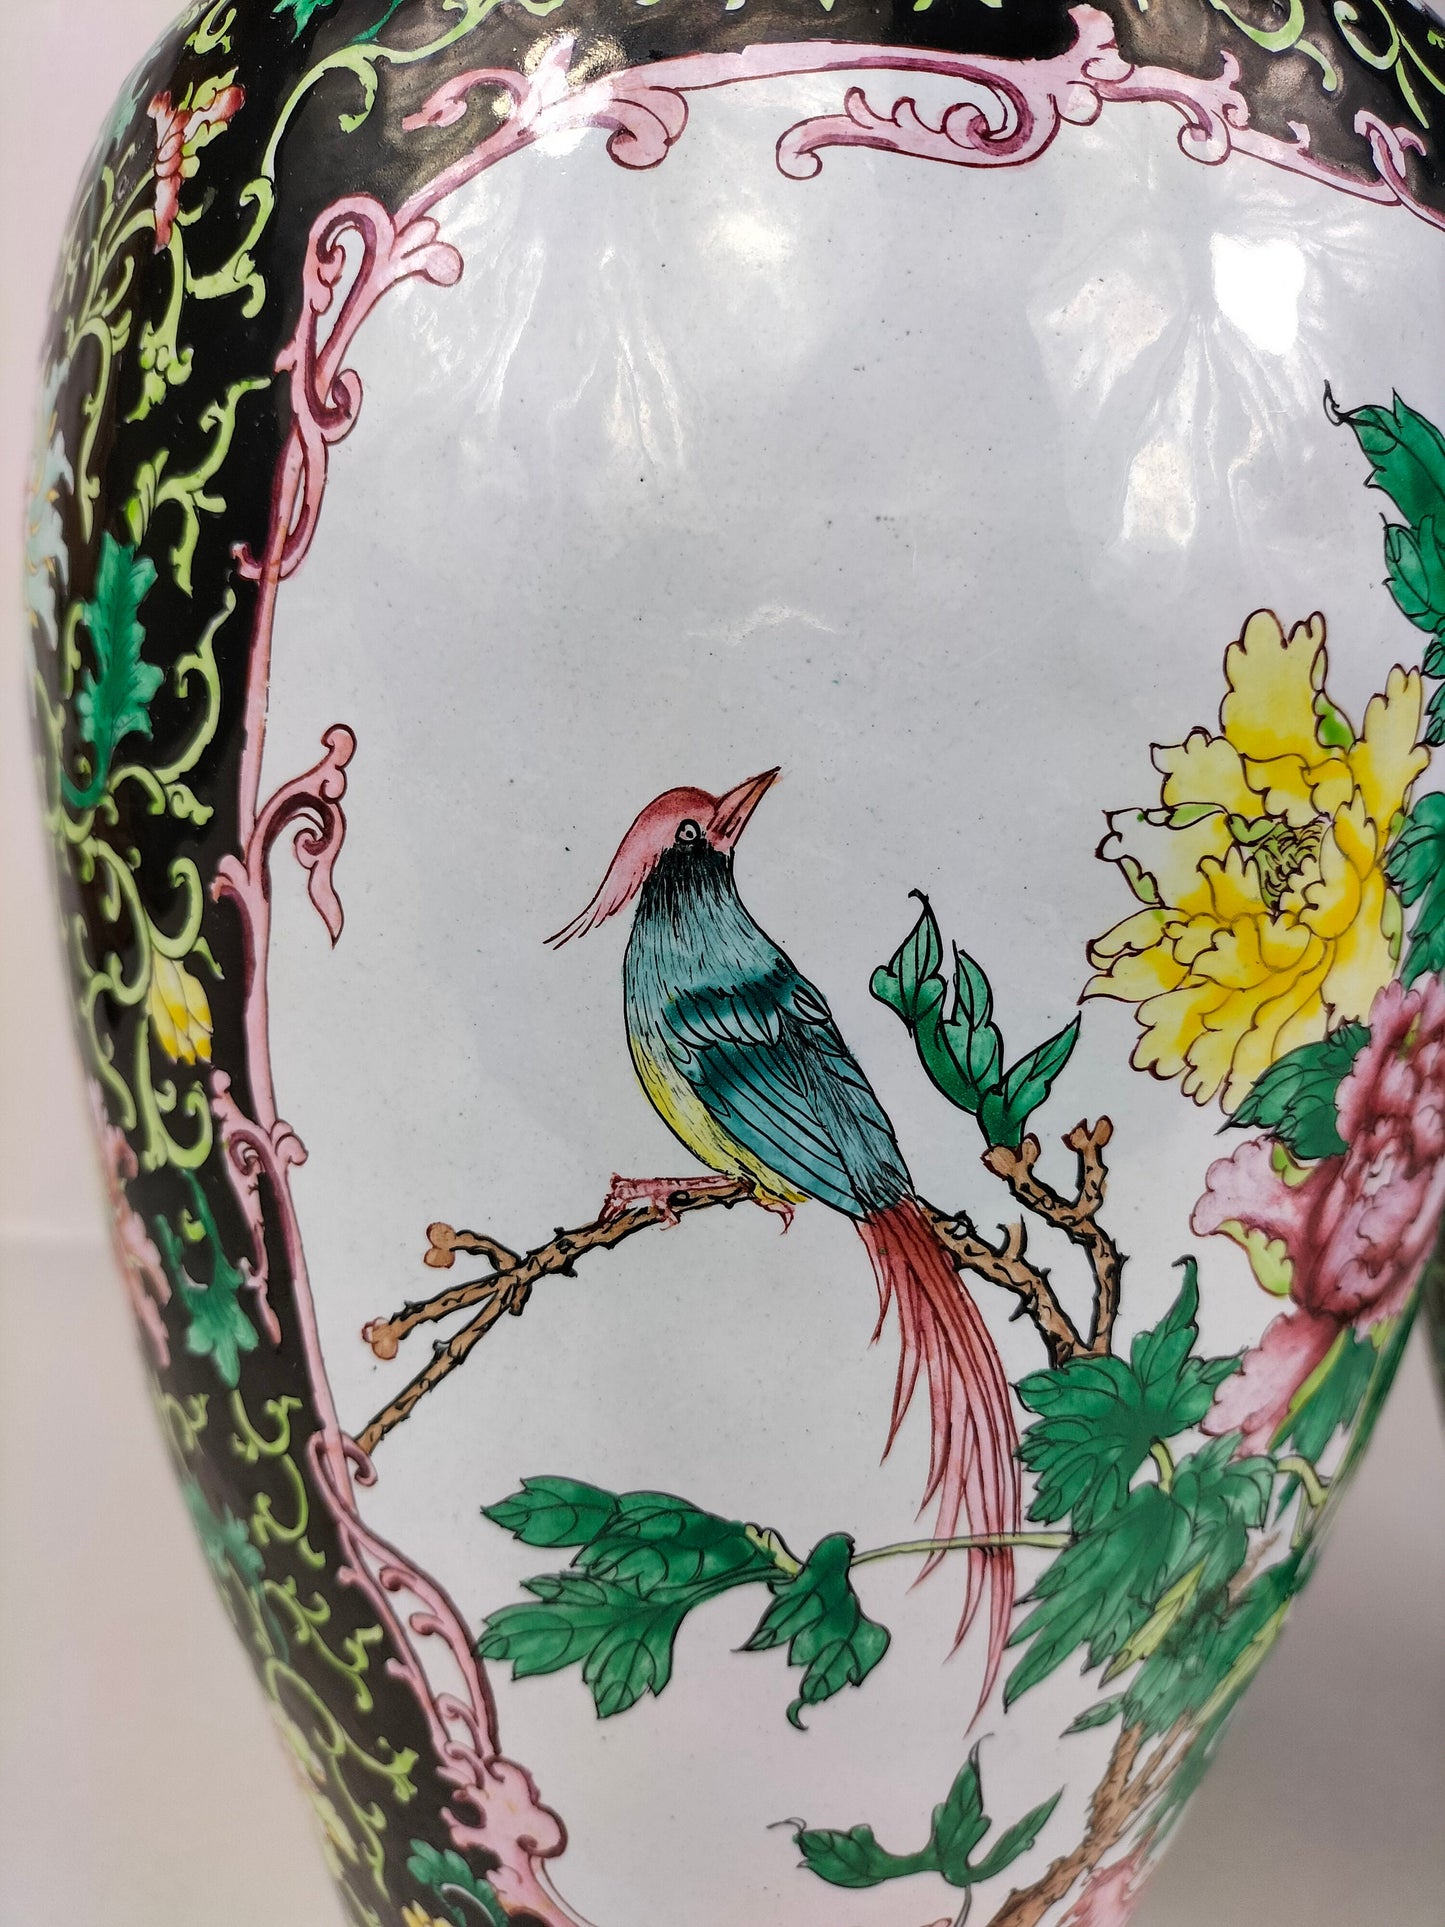 Par de grandes vasos chineses decorados com flores e pássaros // Esmalte cantão - século XX